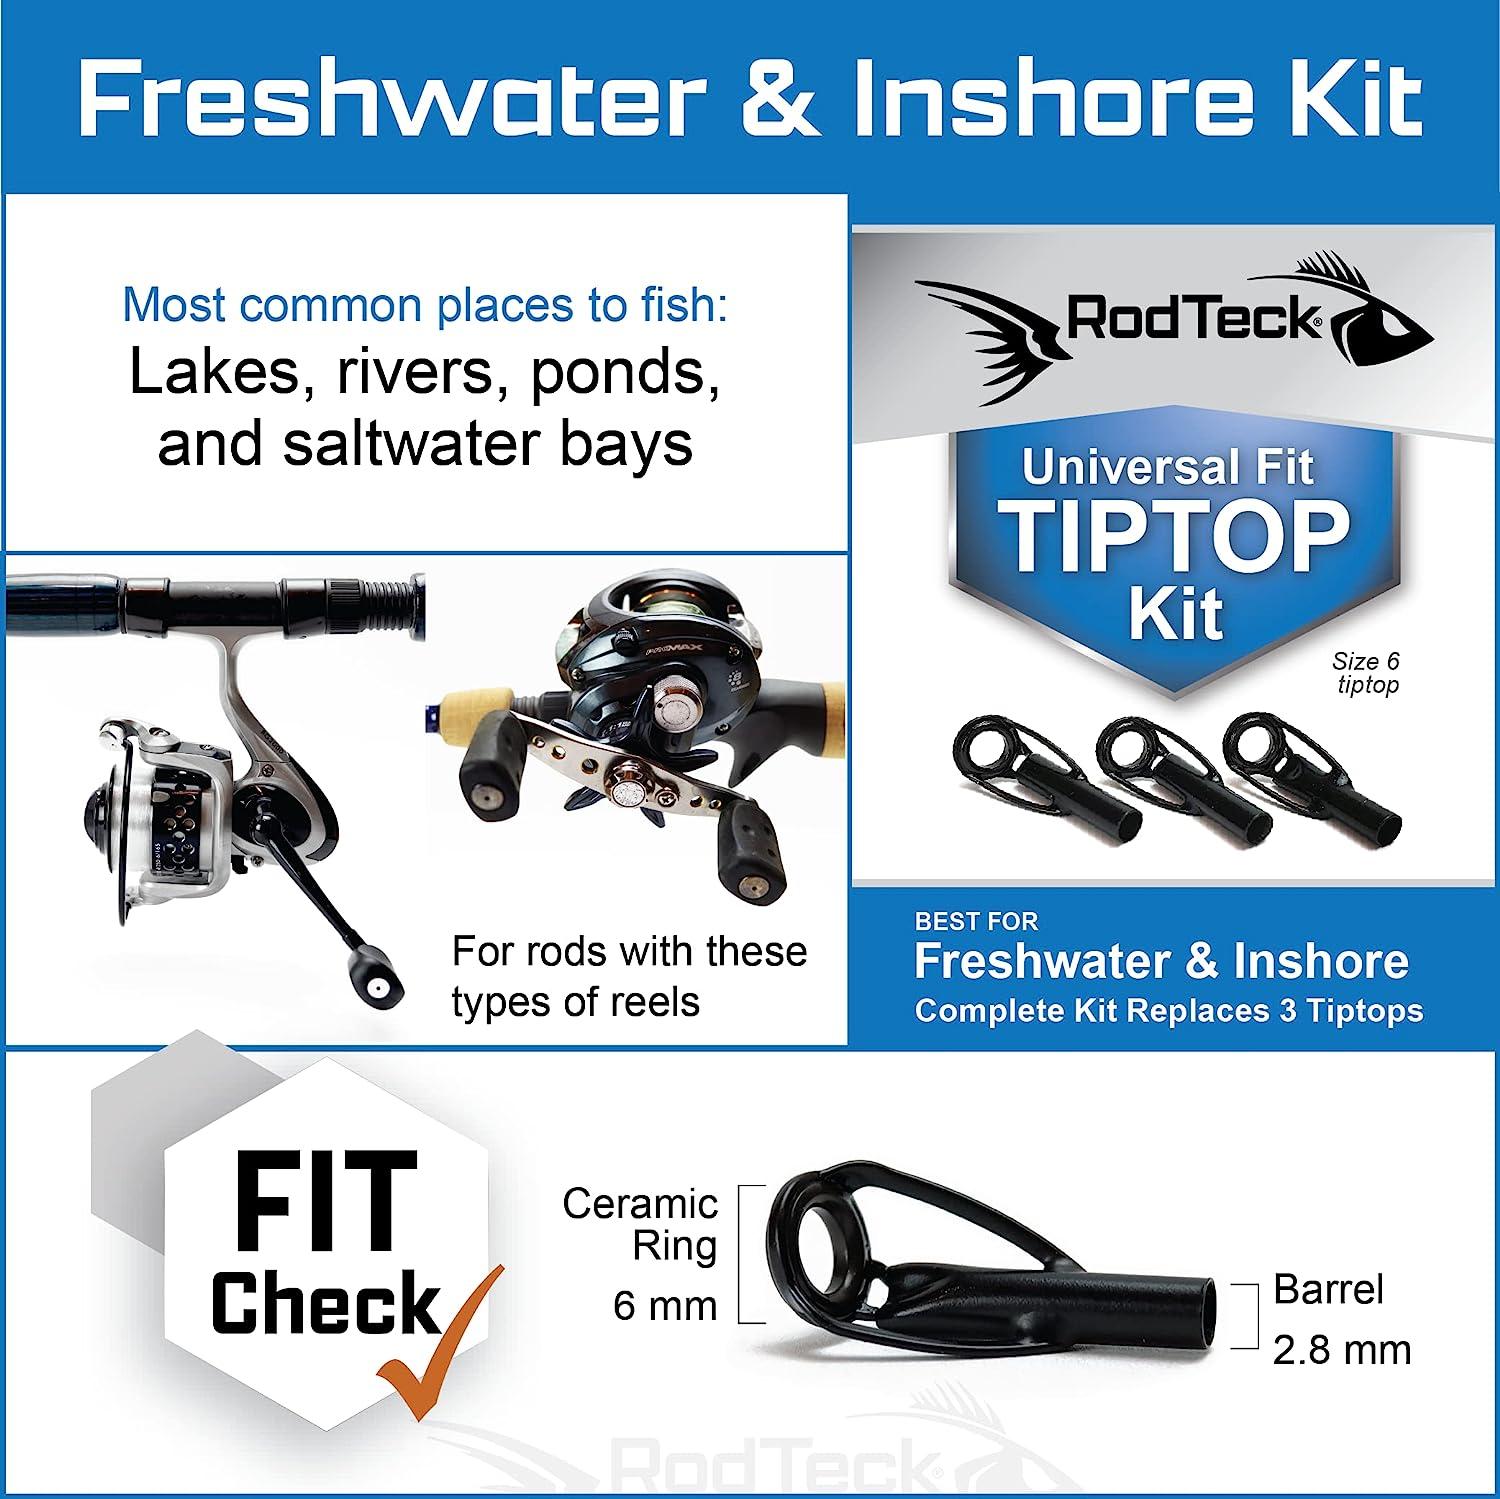 RodTeck Universal Fit Tiptop Kit, Freshwater & Saltwater